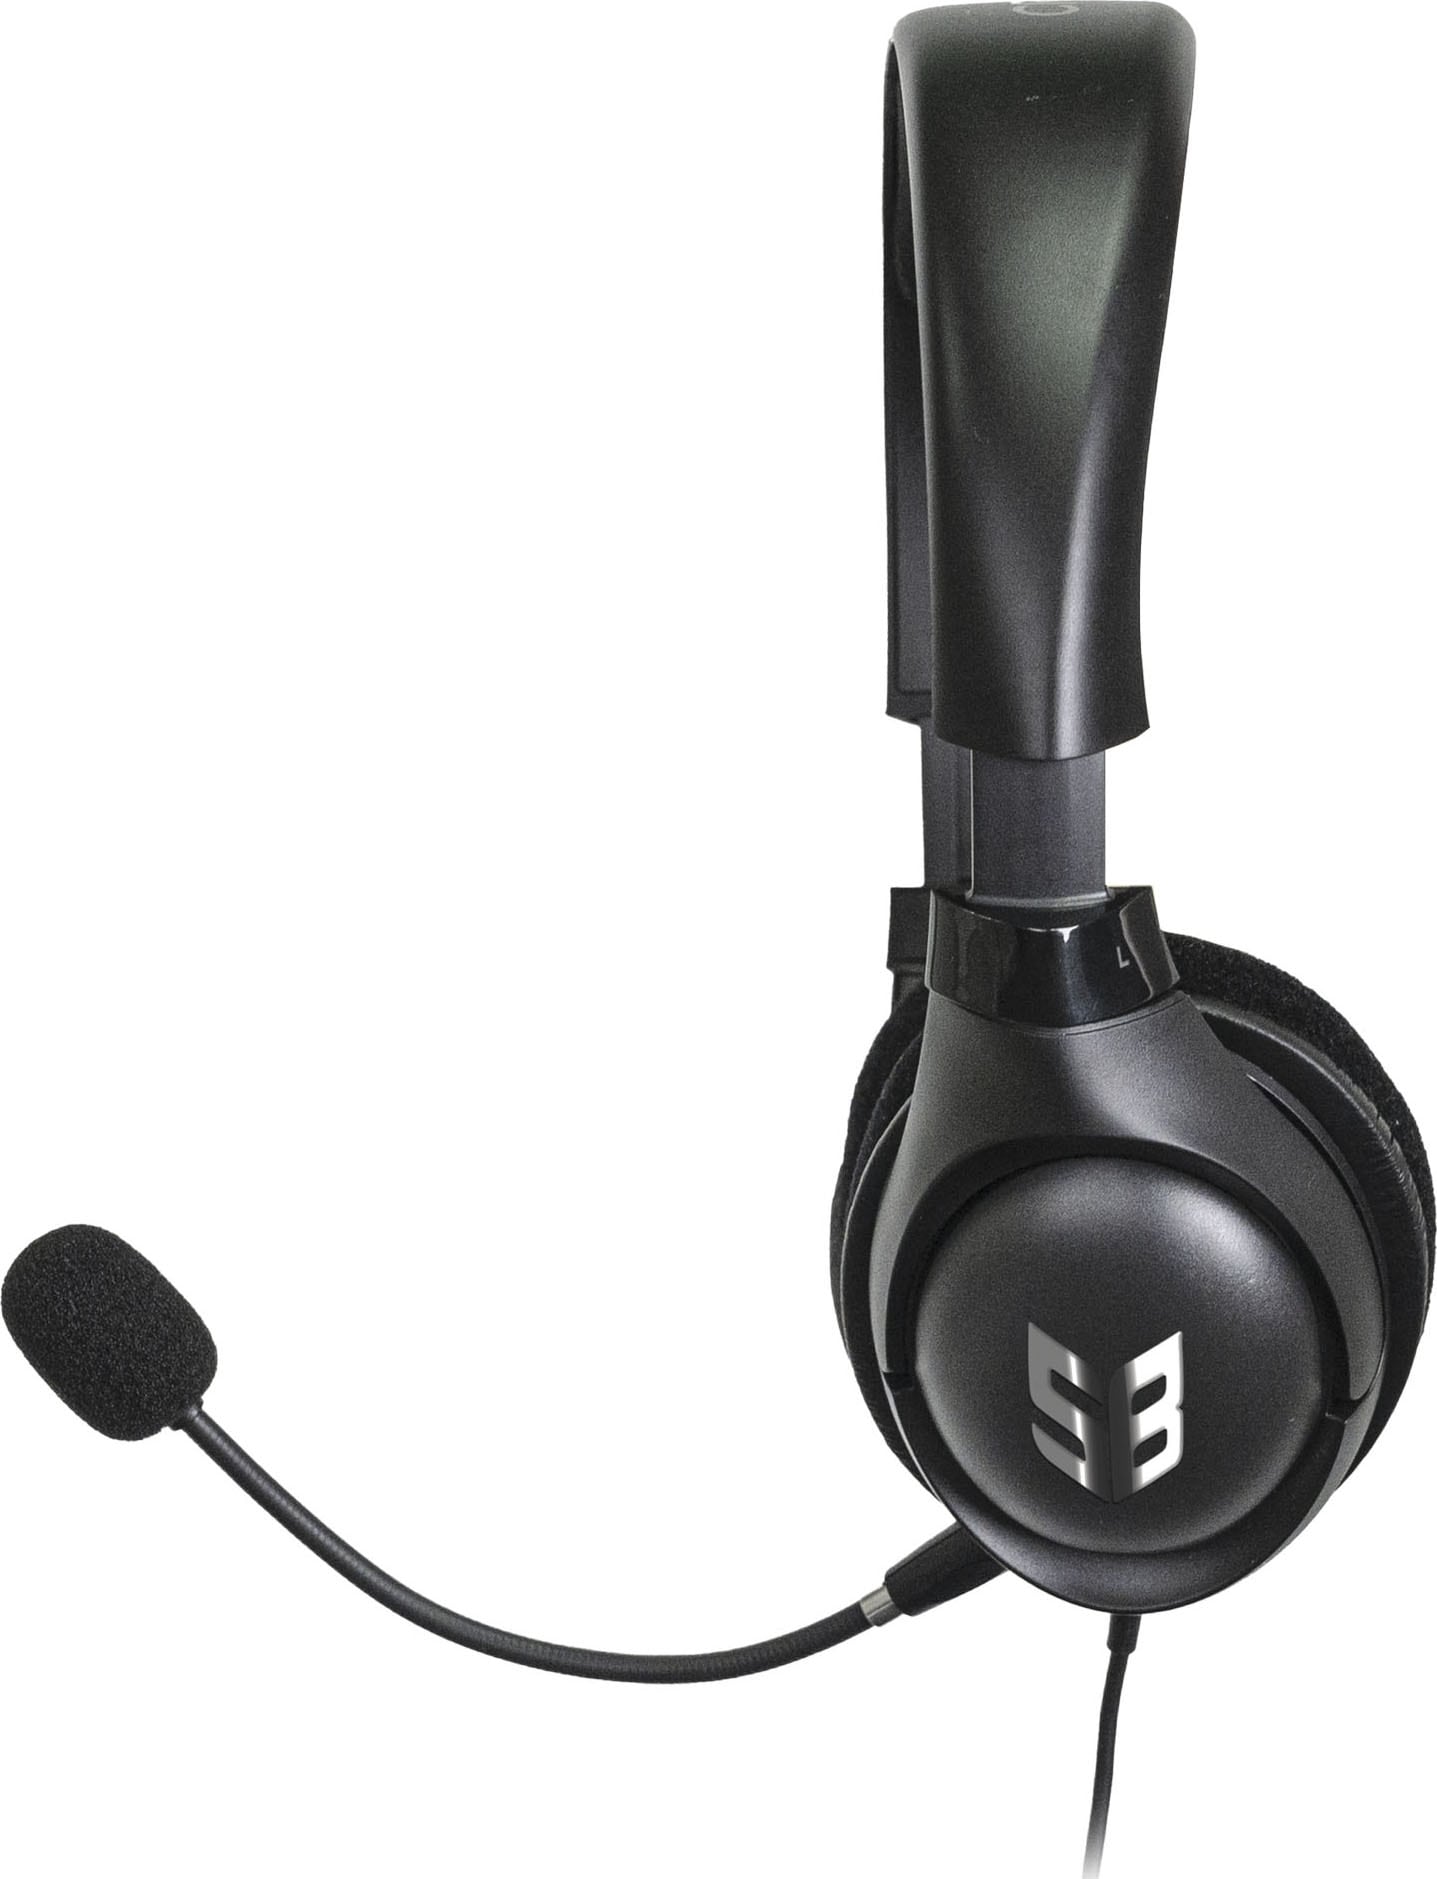 Creative Gaming-Headset »Sound Blaster Blaze V2 analog«, 3,5 mm Klinke